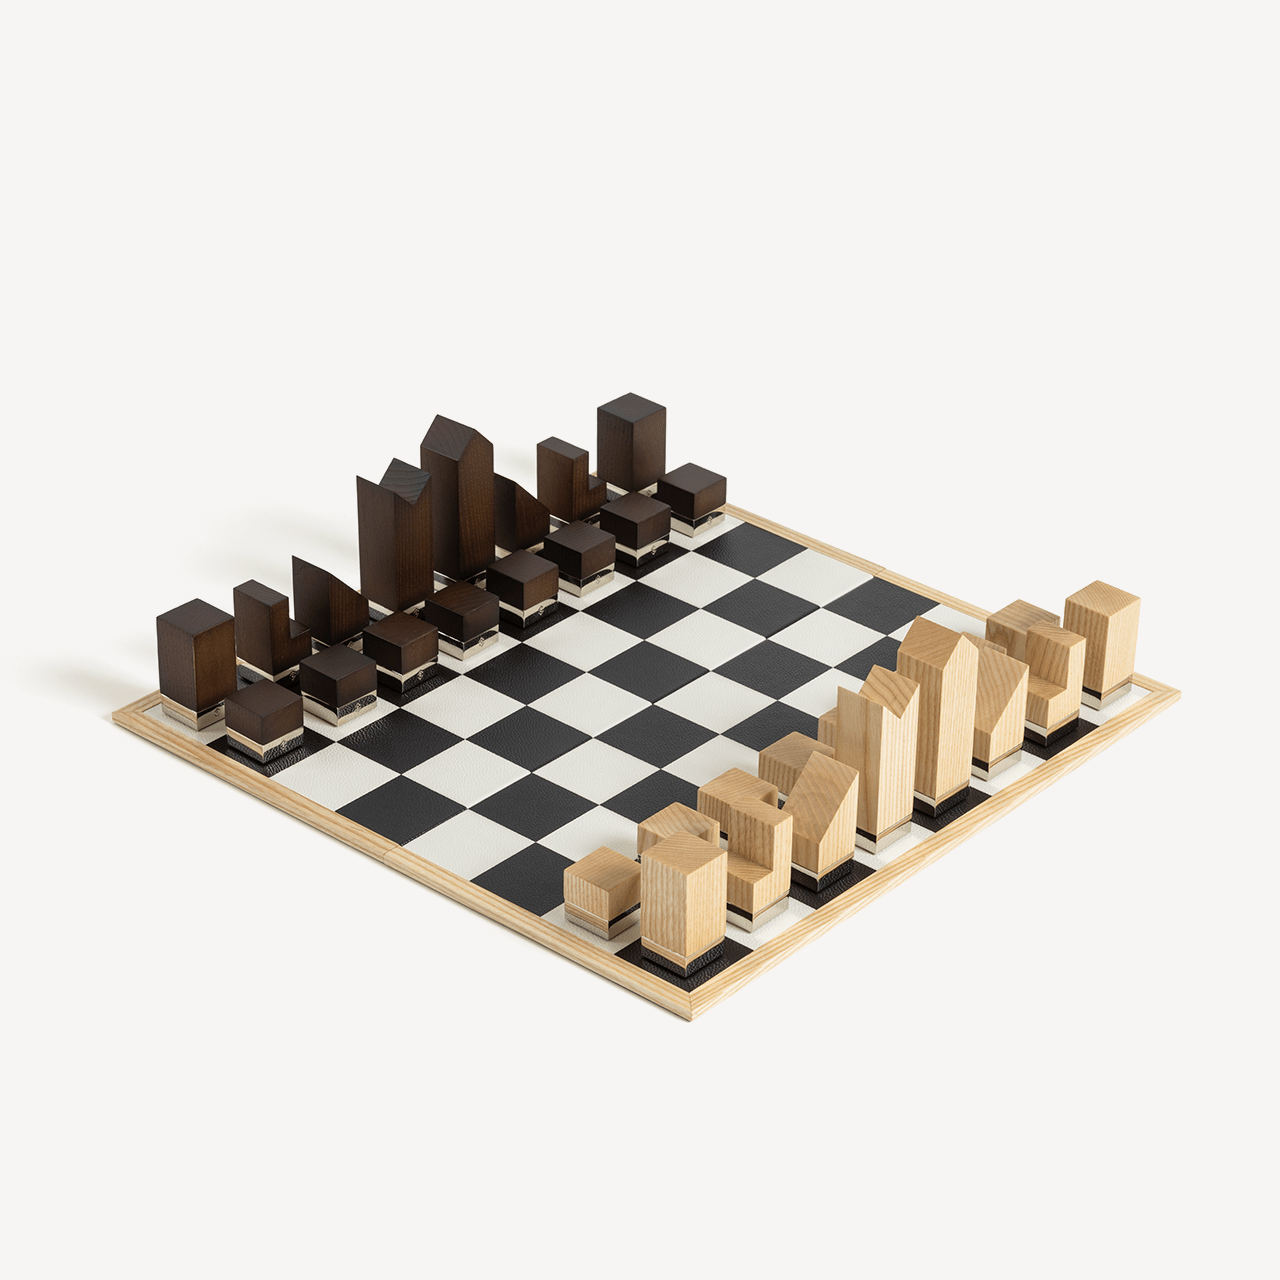 国际象棋 - 琥珀色和银灰色 - Swaine